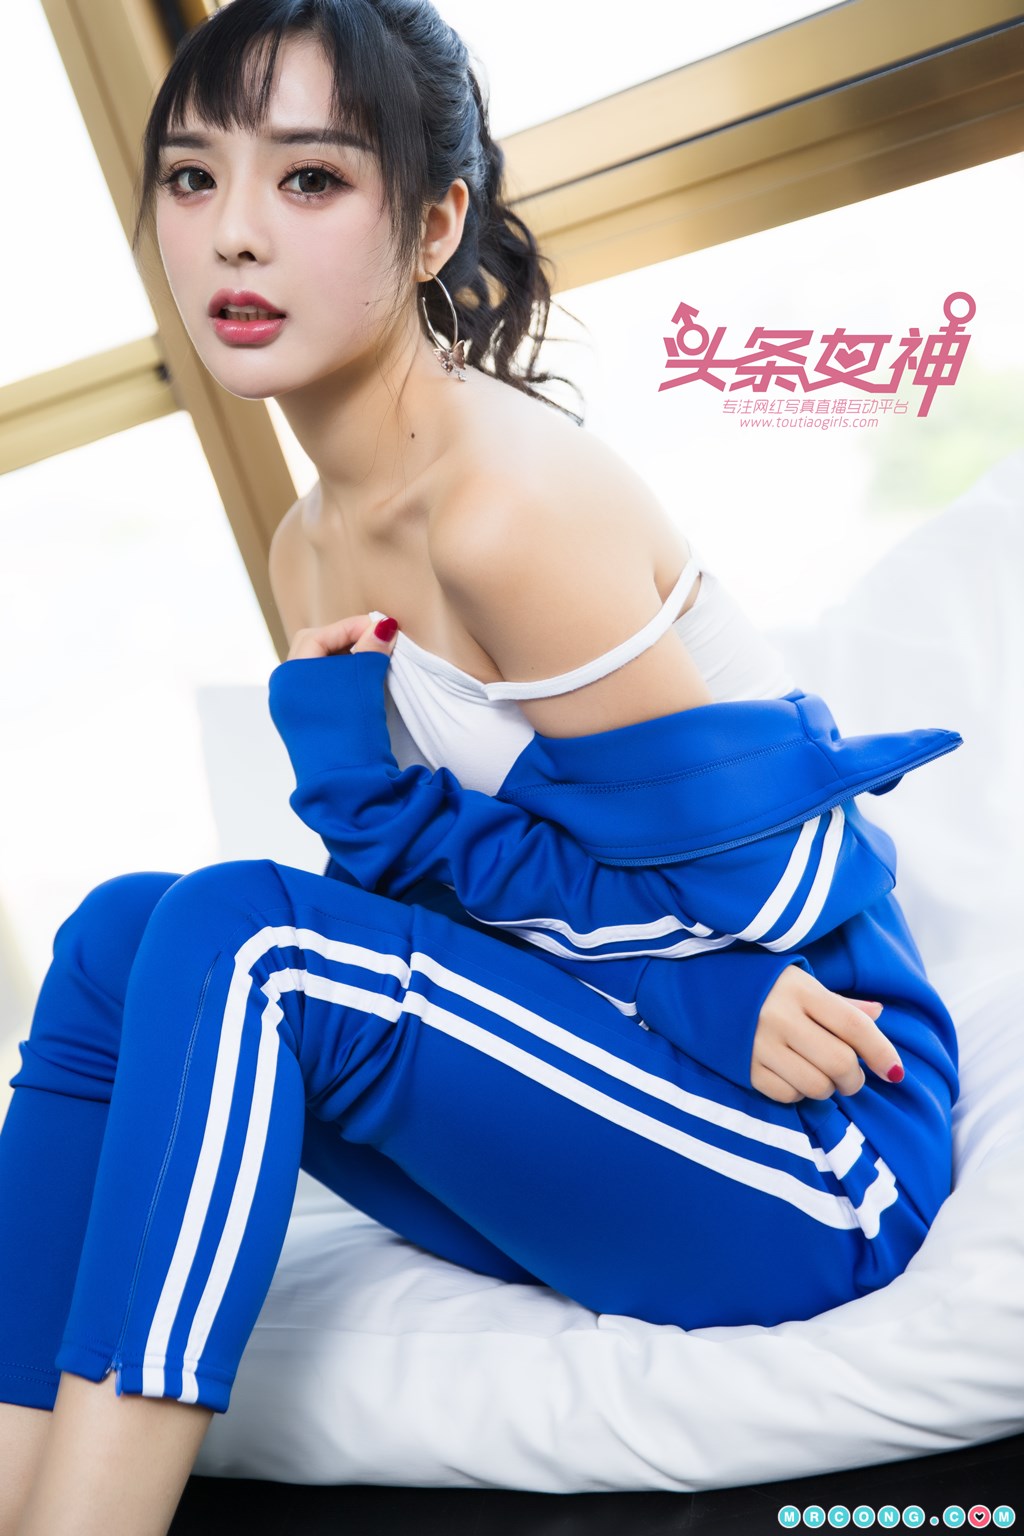 TouTiao 2017-11-26: Model Zhou Xi Yan (周 熙 妍) (23 photos) photo 1-8